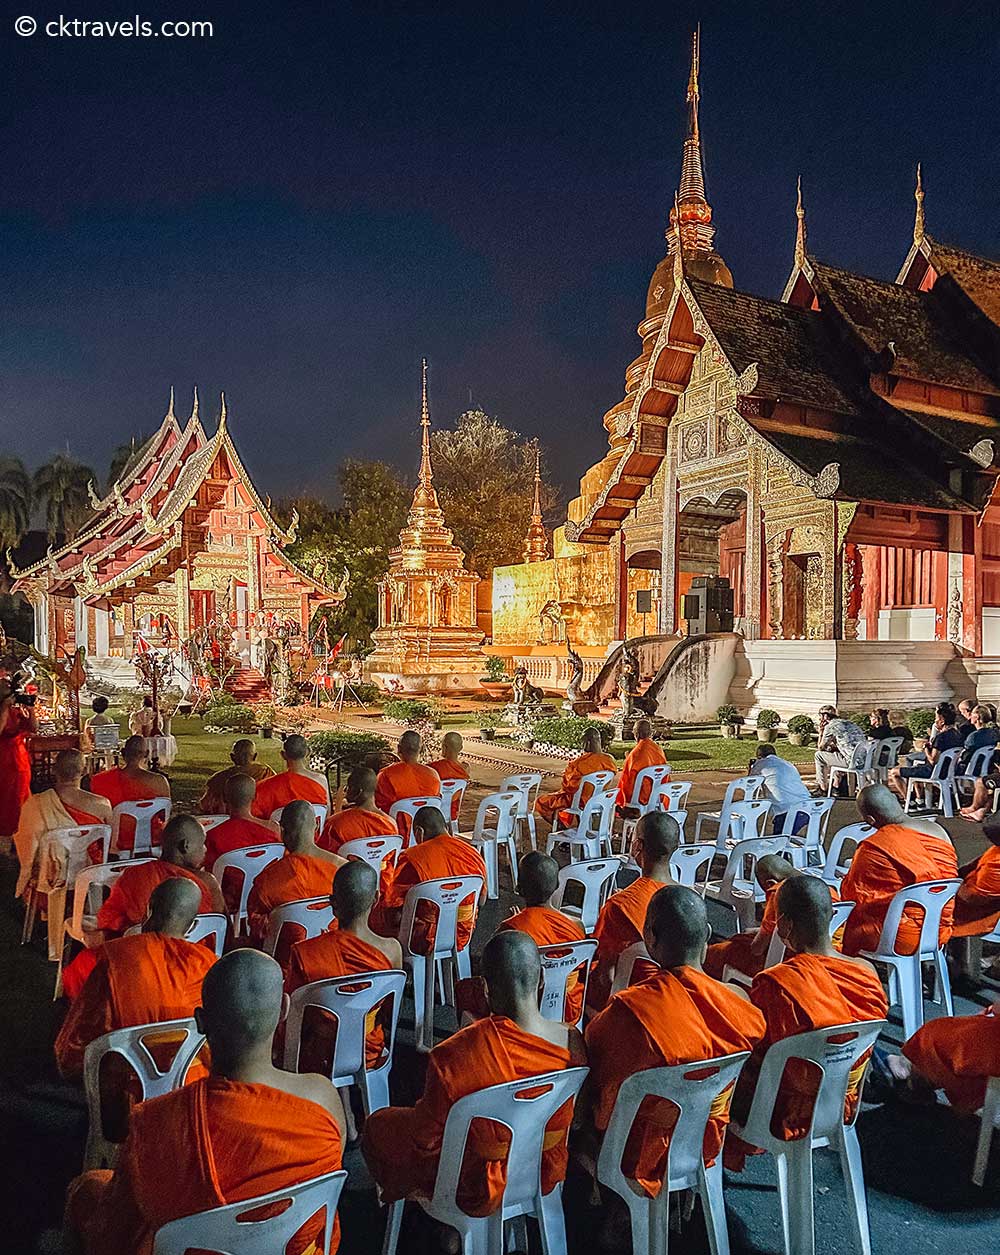 Monk chanting at Wat Phra Singh